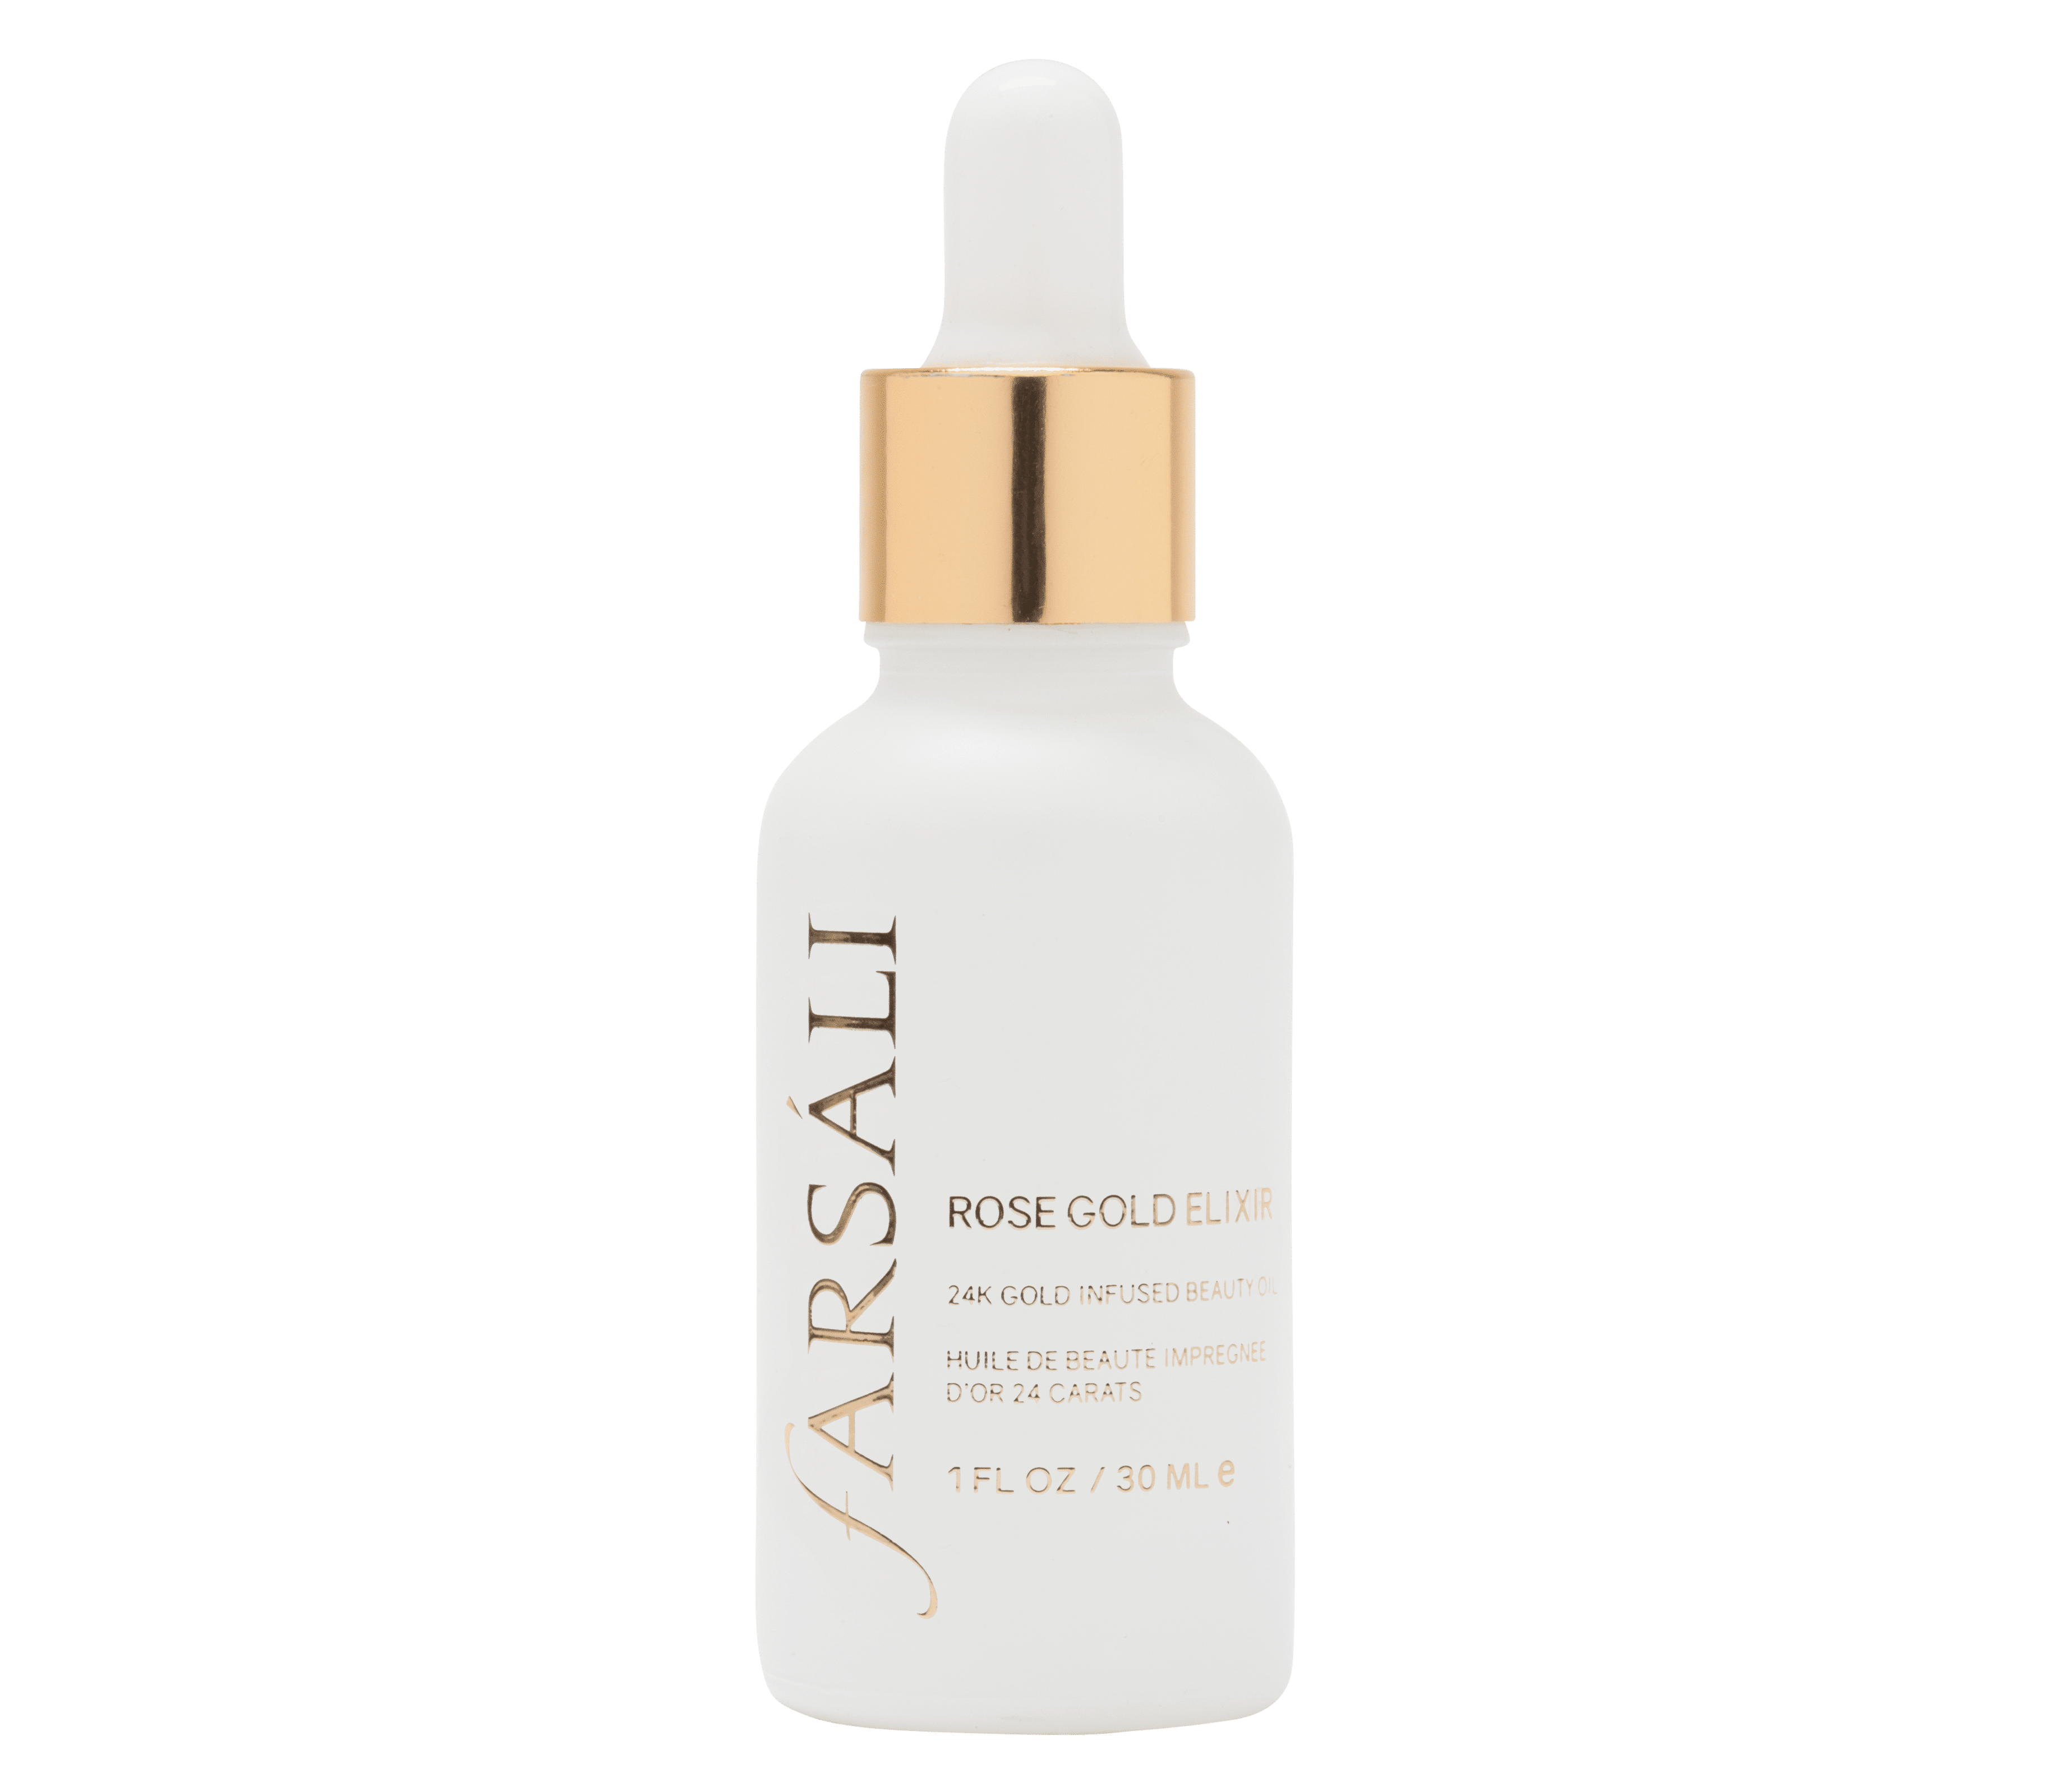 Farsali Rose Gold Elixir: un trattamento idratante quotidiano per nutrire, illuminare e migliorare la texture della pelle